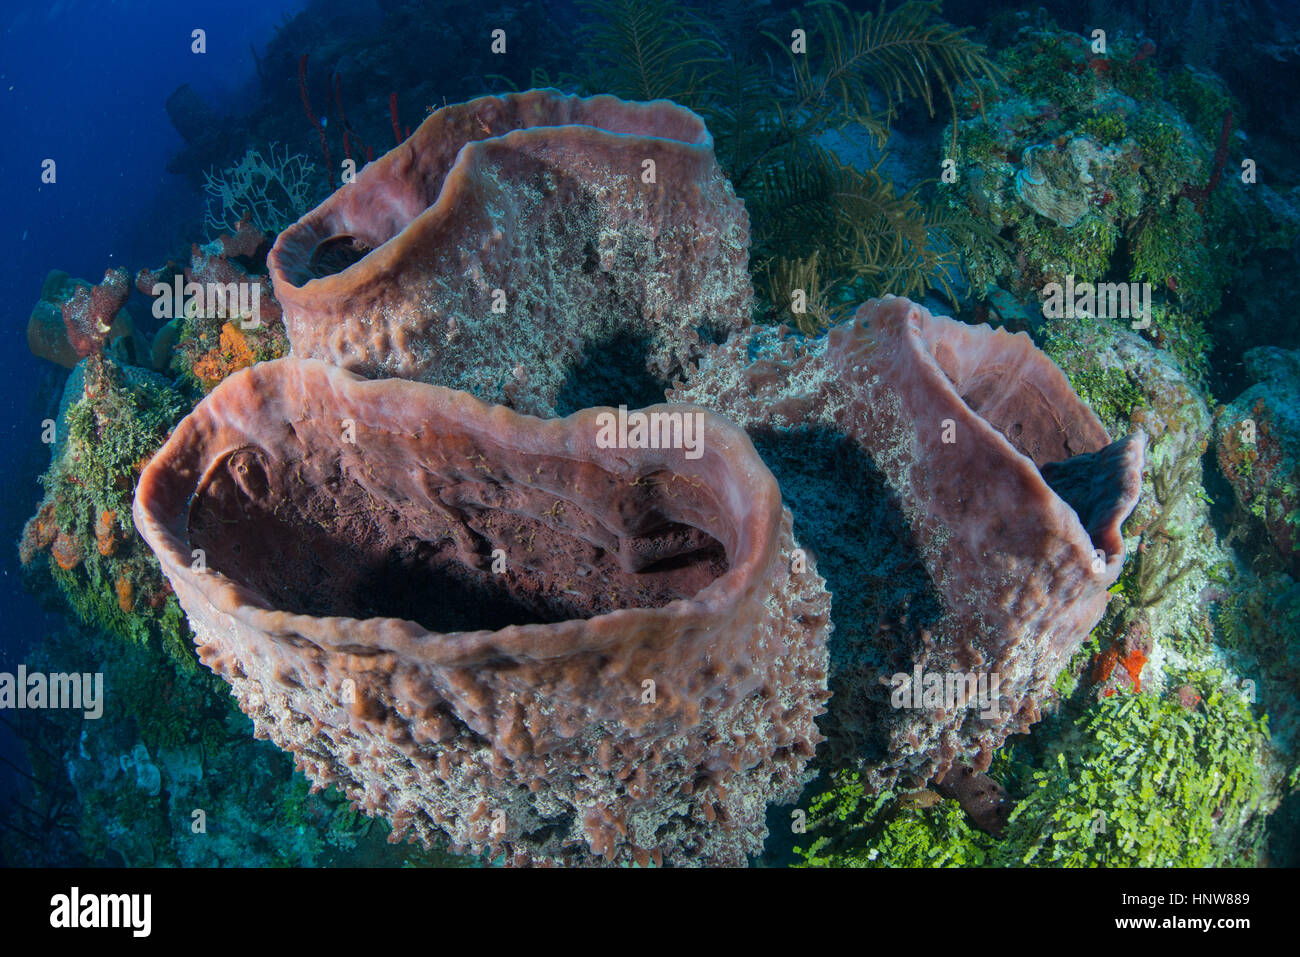 Les éponges énormes récifs préservés, au Banques Chinchorro, Quintana Roo, Mexique Banque D'Images